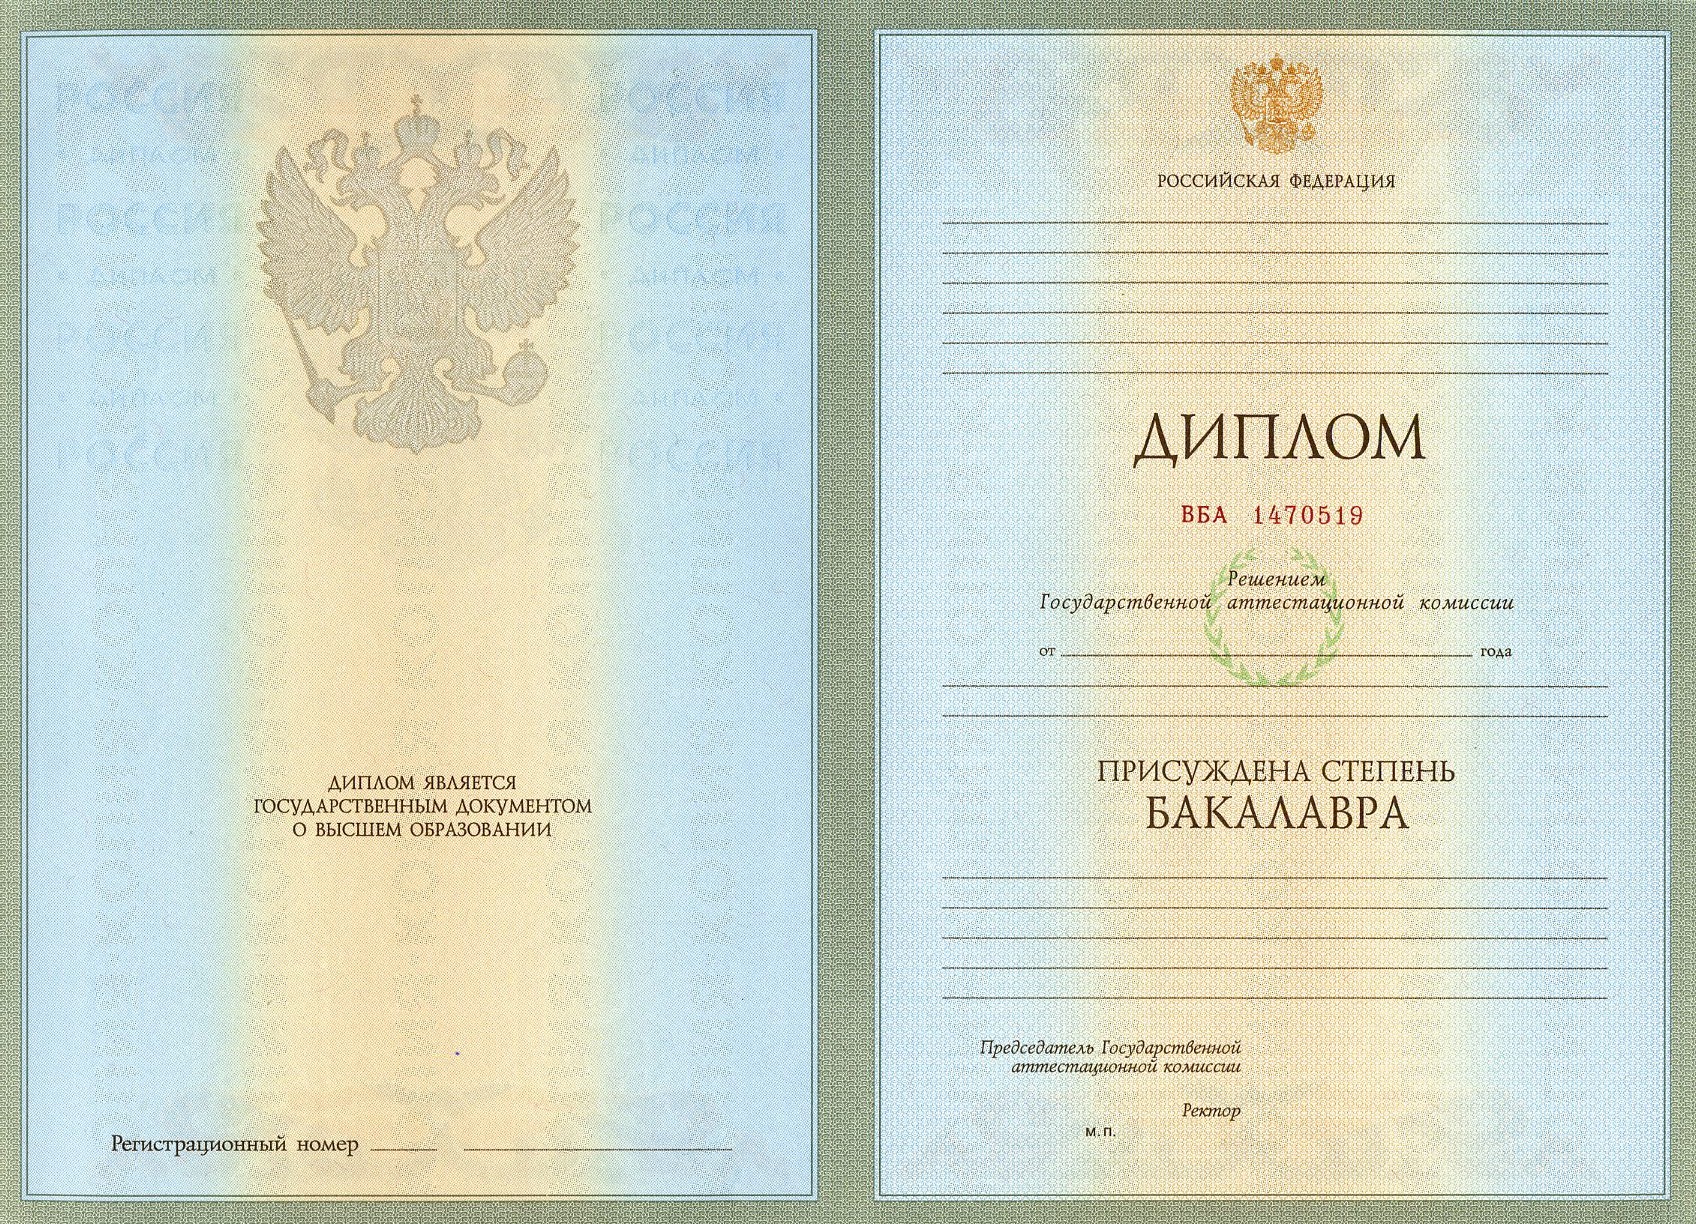 Диплом бакалавра 2004 - 2008 гг.